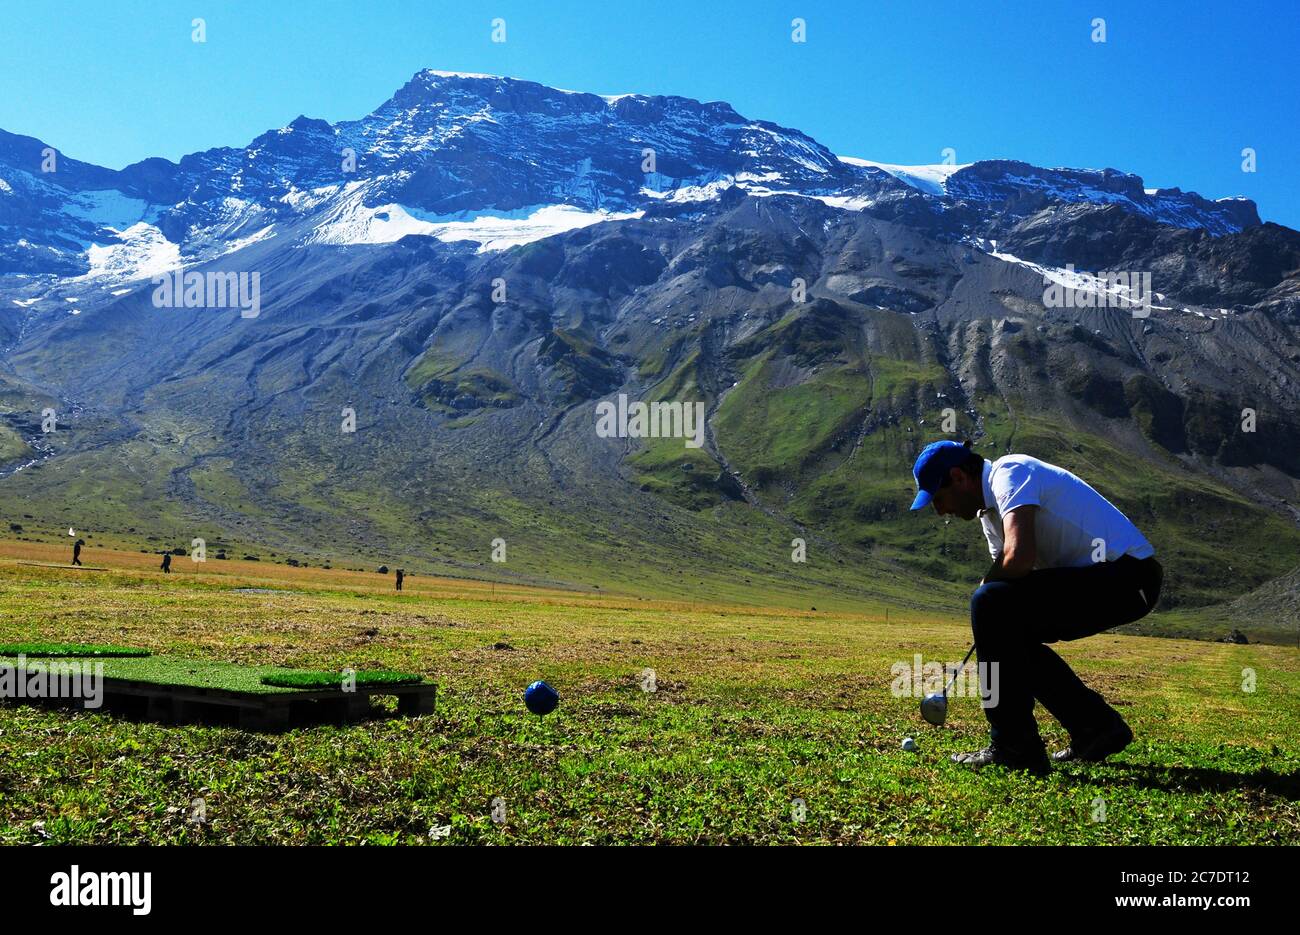 Mountain Golf auf der Engstligenalp im Berner Oberland in der Nähe von  Adelboden Stockfotografie - Alamy